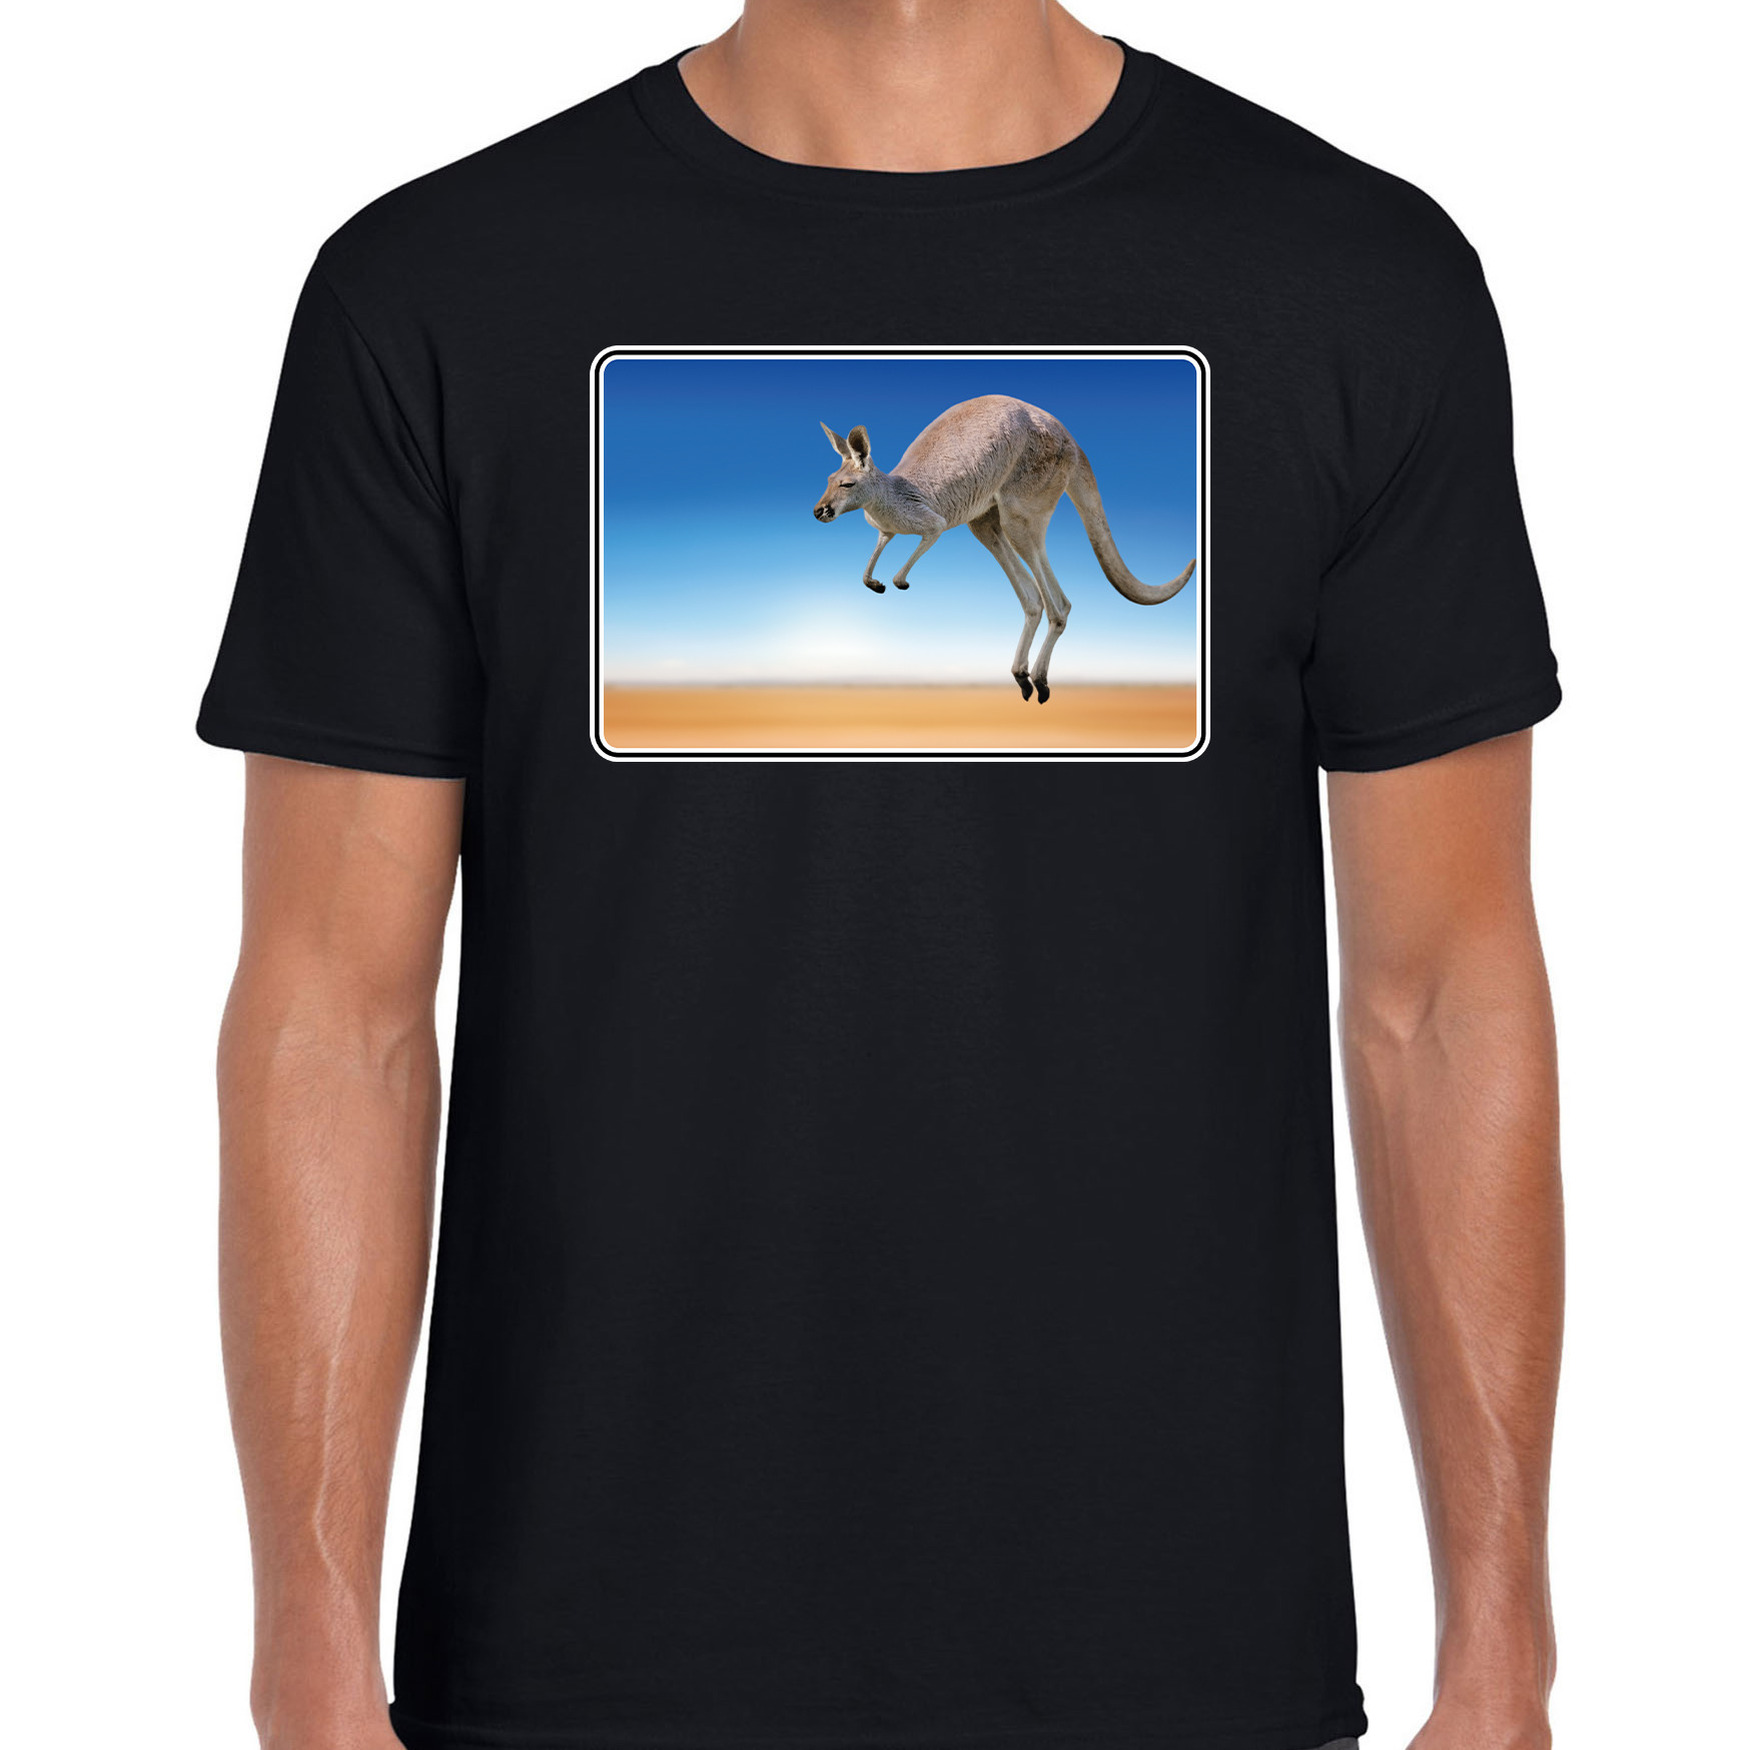 Dieren t-shirt met kangoeroes foto zwart voor heren